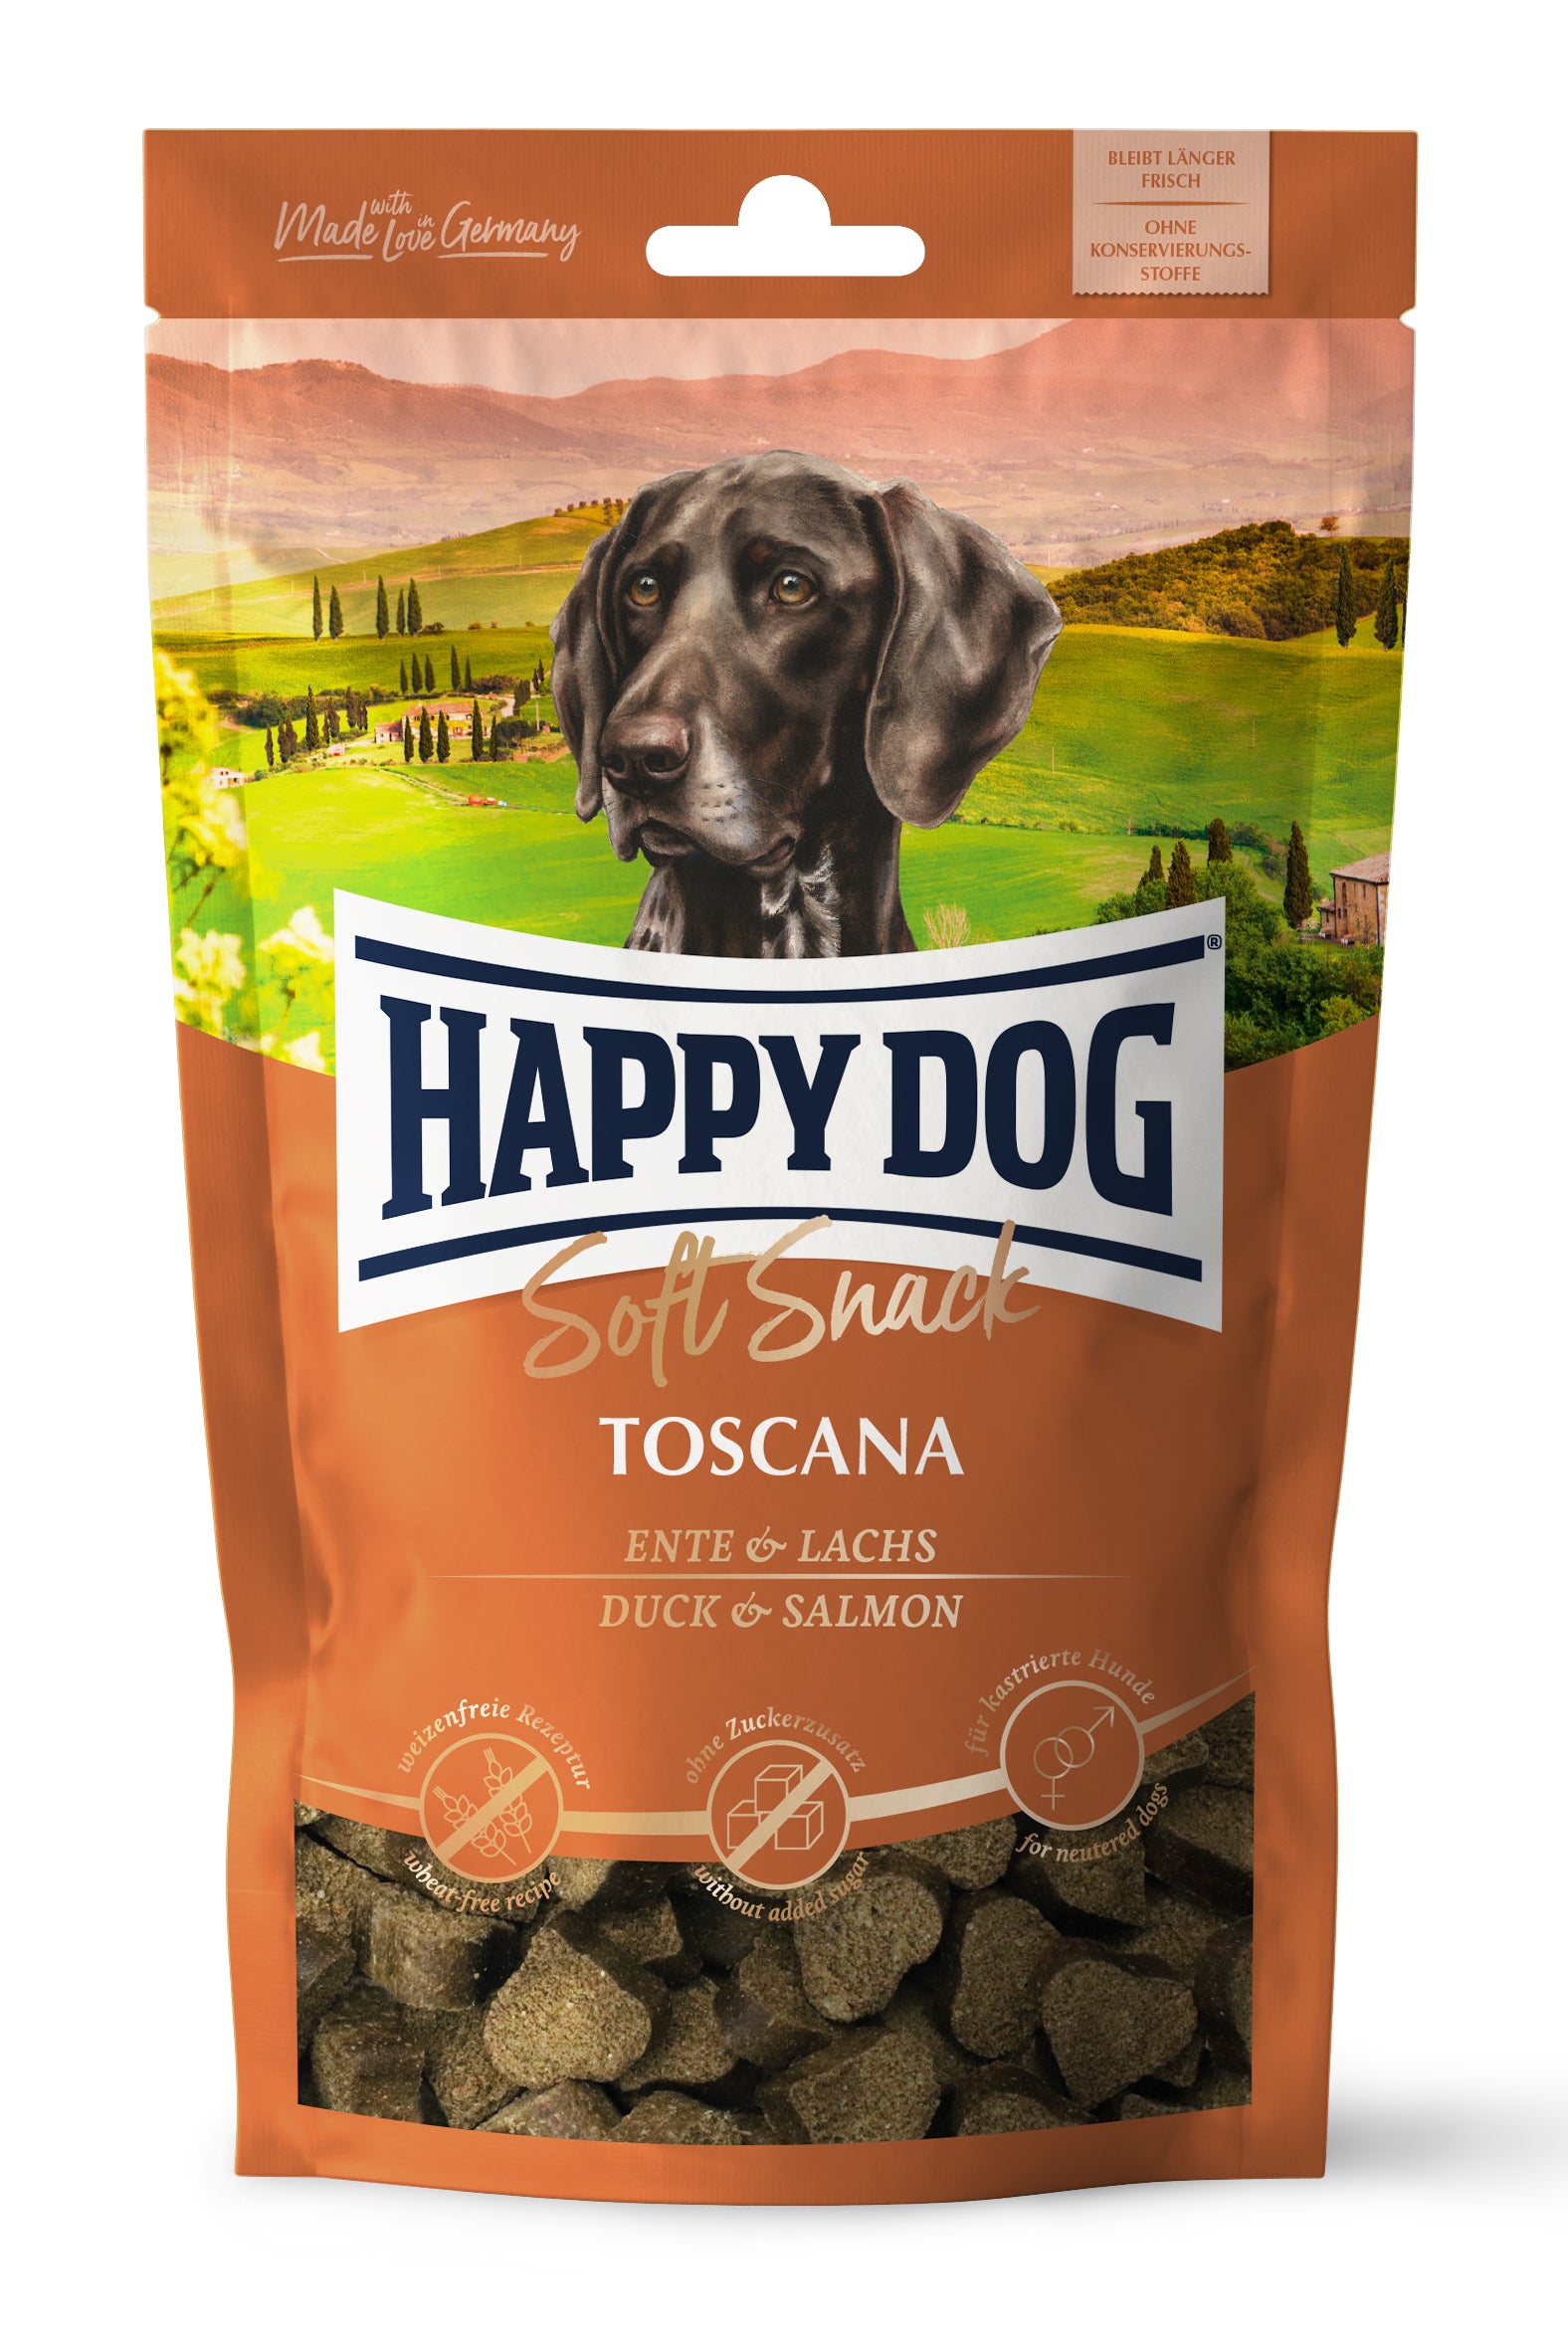 Artikel mit dem Namen Happy Dog Soft Snack Toscana im Shop von zoo.de , dem Onlineshop für nachhaltiges Hundefutter und Katzenfutter.